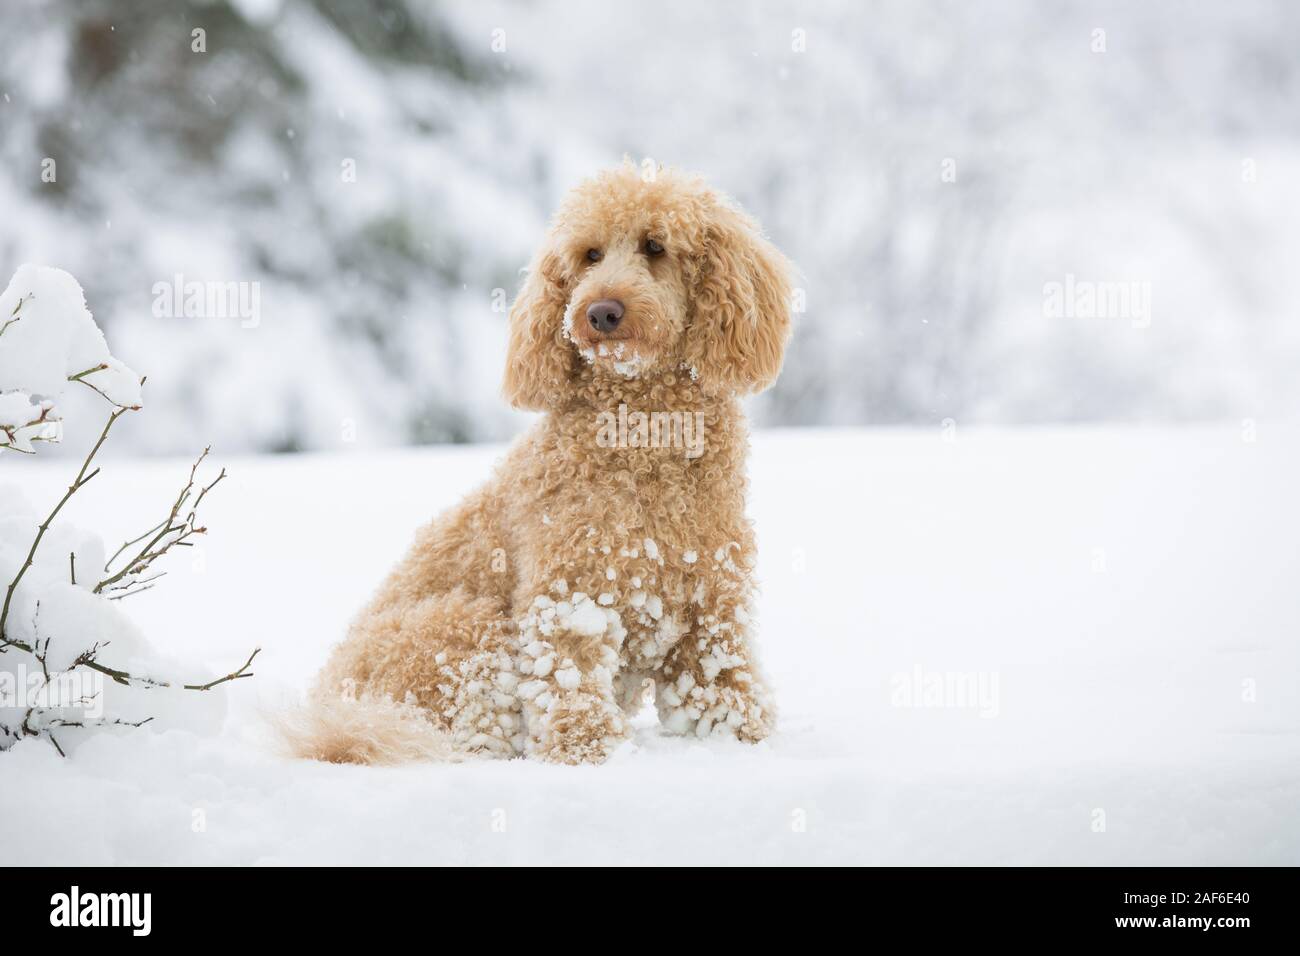 Jeune caniche abricot posant dehors dans la neige. Portrait de caniche abricot mignon dans le magnifique paysage d'hiver, Weissensee, Alpes autrichiennes, Autriche Banque D'Images